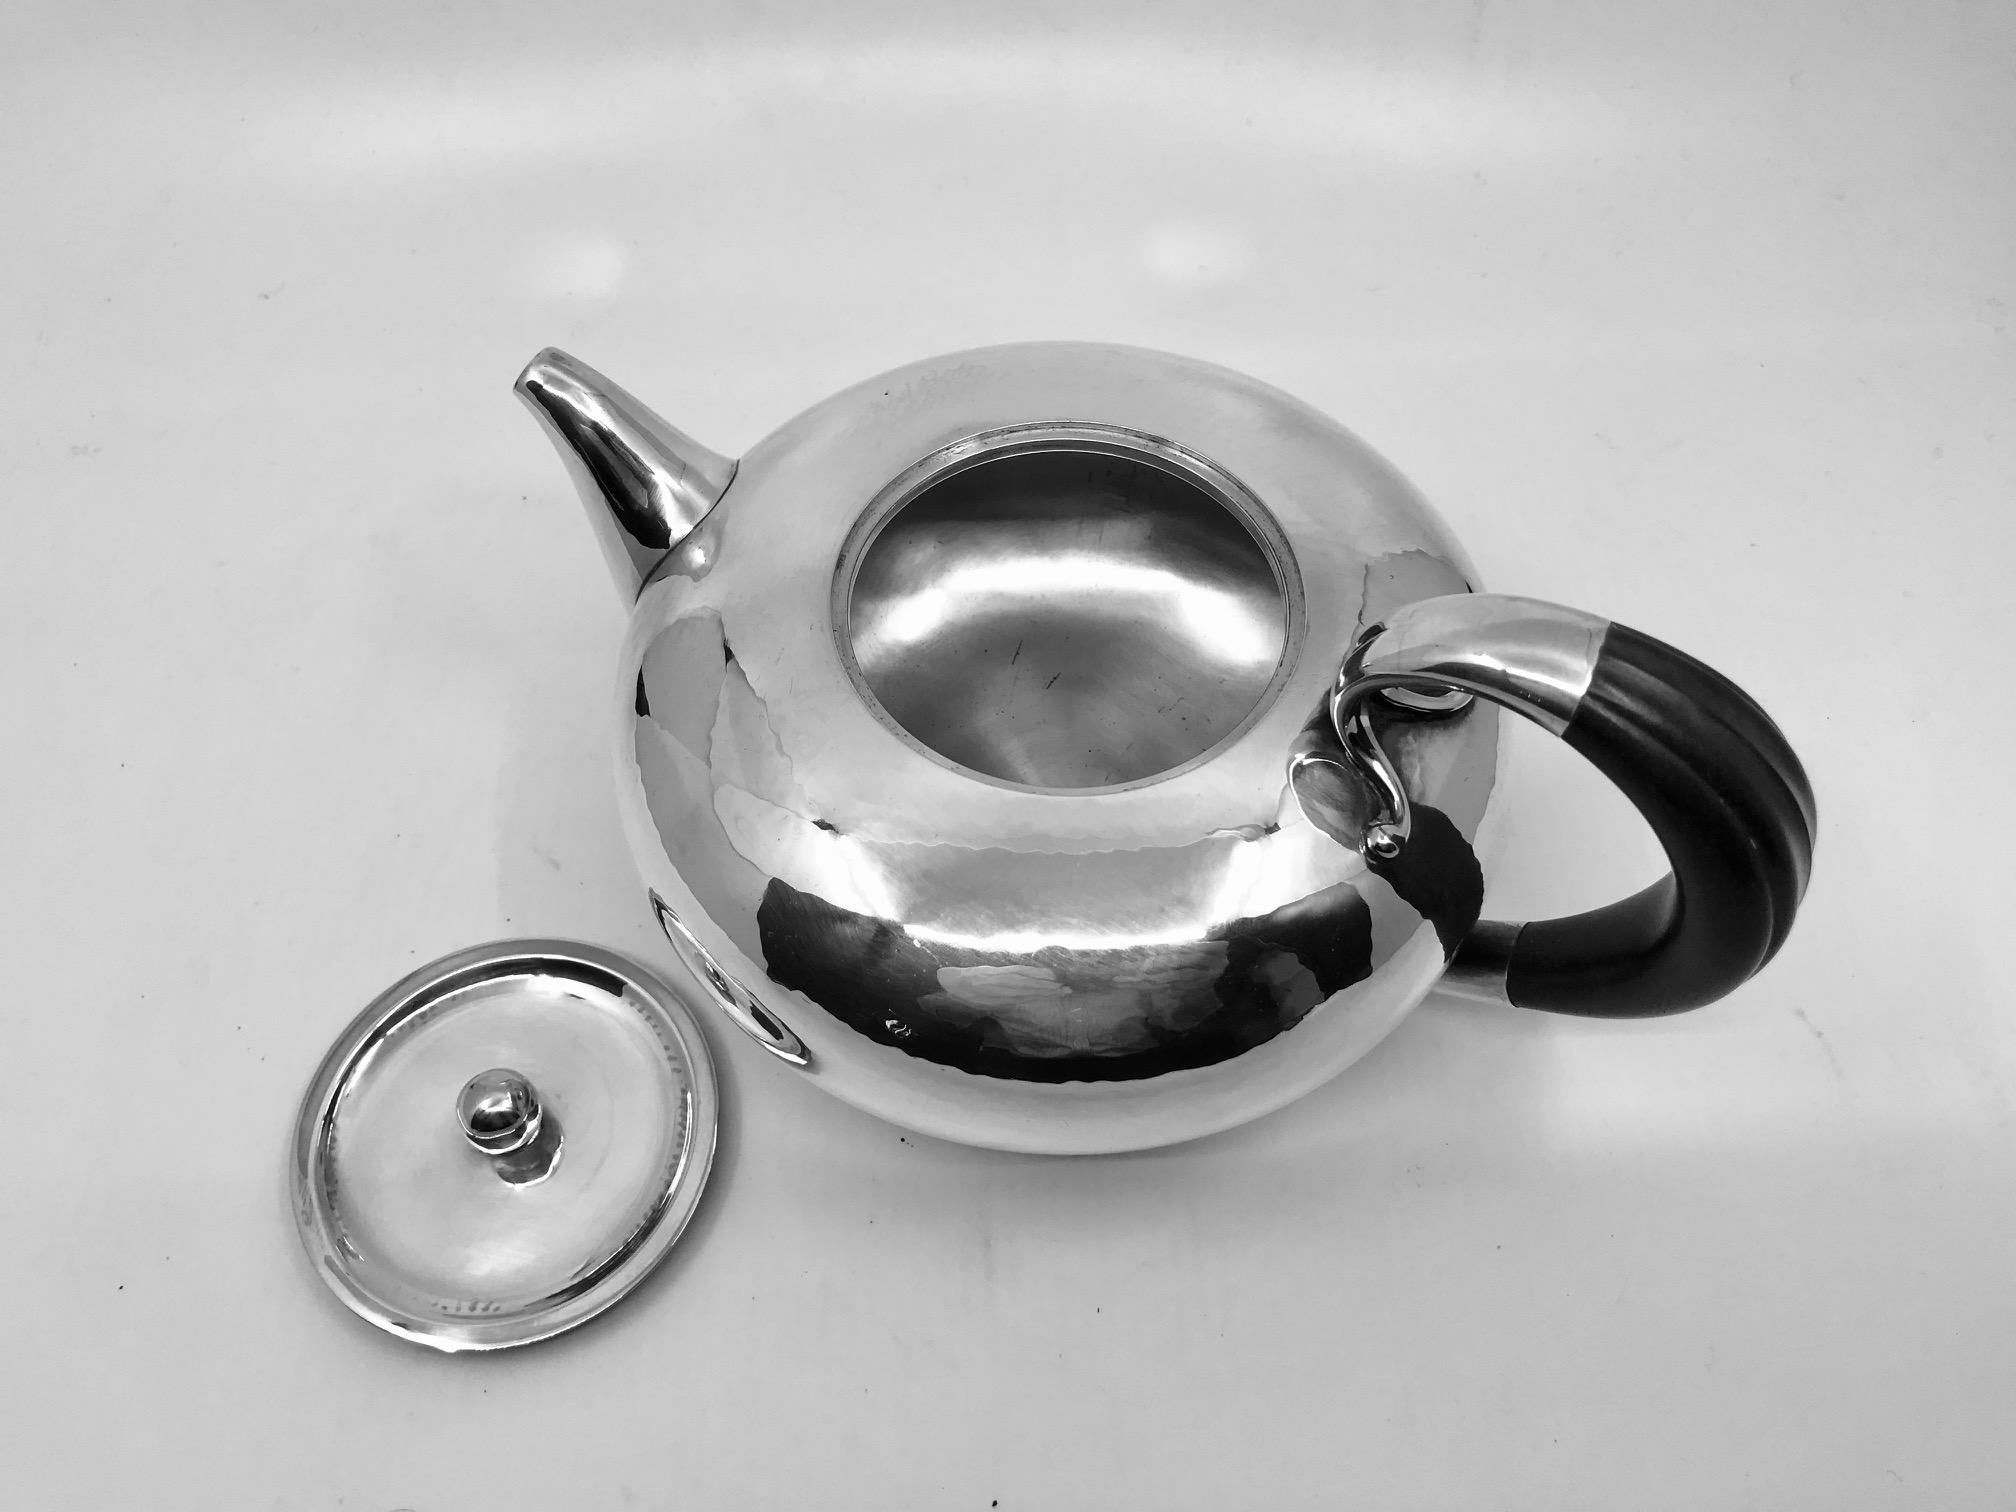 Hammered Vintage Georg Jensen Johan Rohde Tea Set #787 For Sale